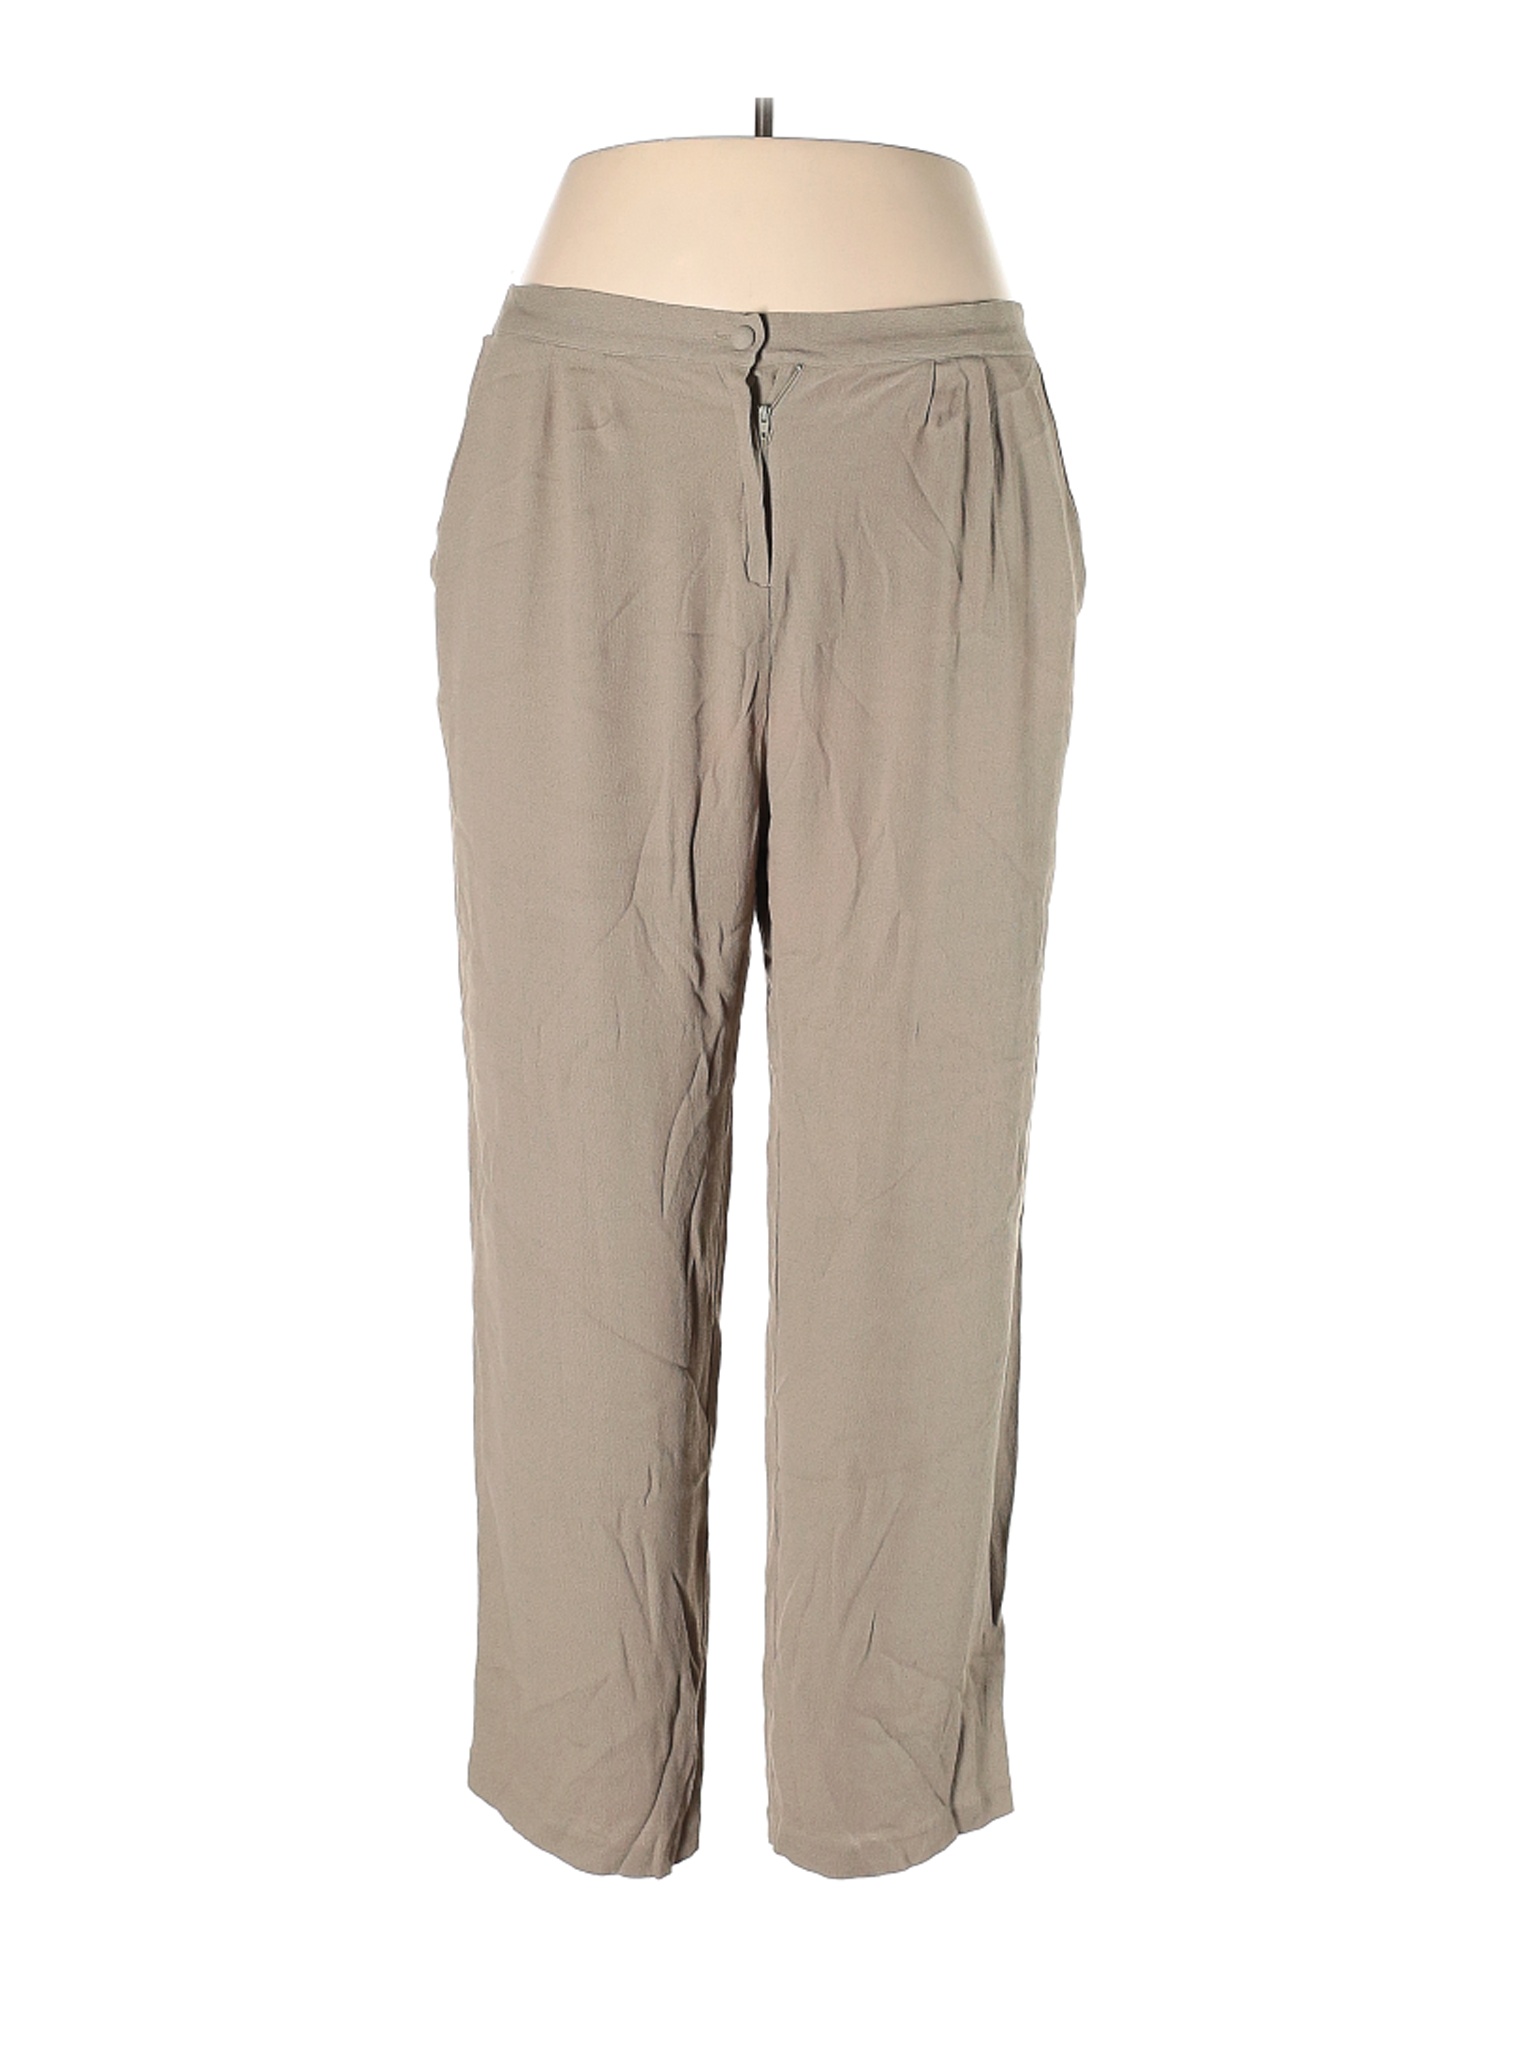 Unbranded Women Brown Casual Pants 22 Plus | eBay